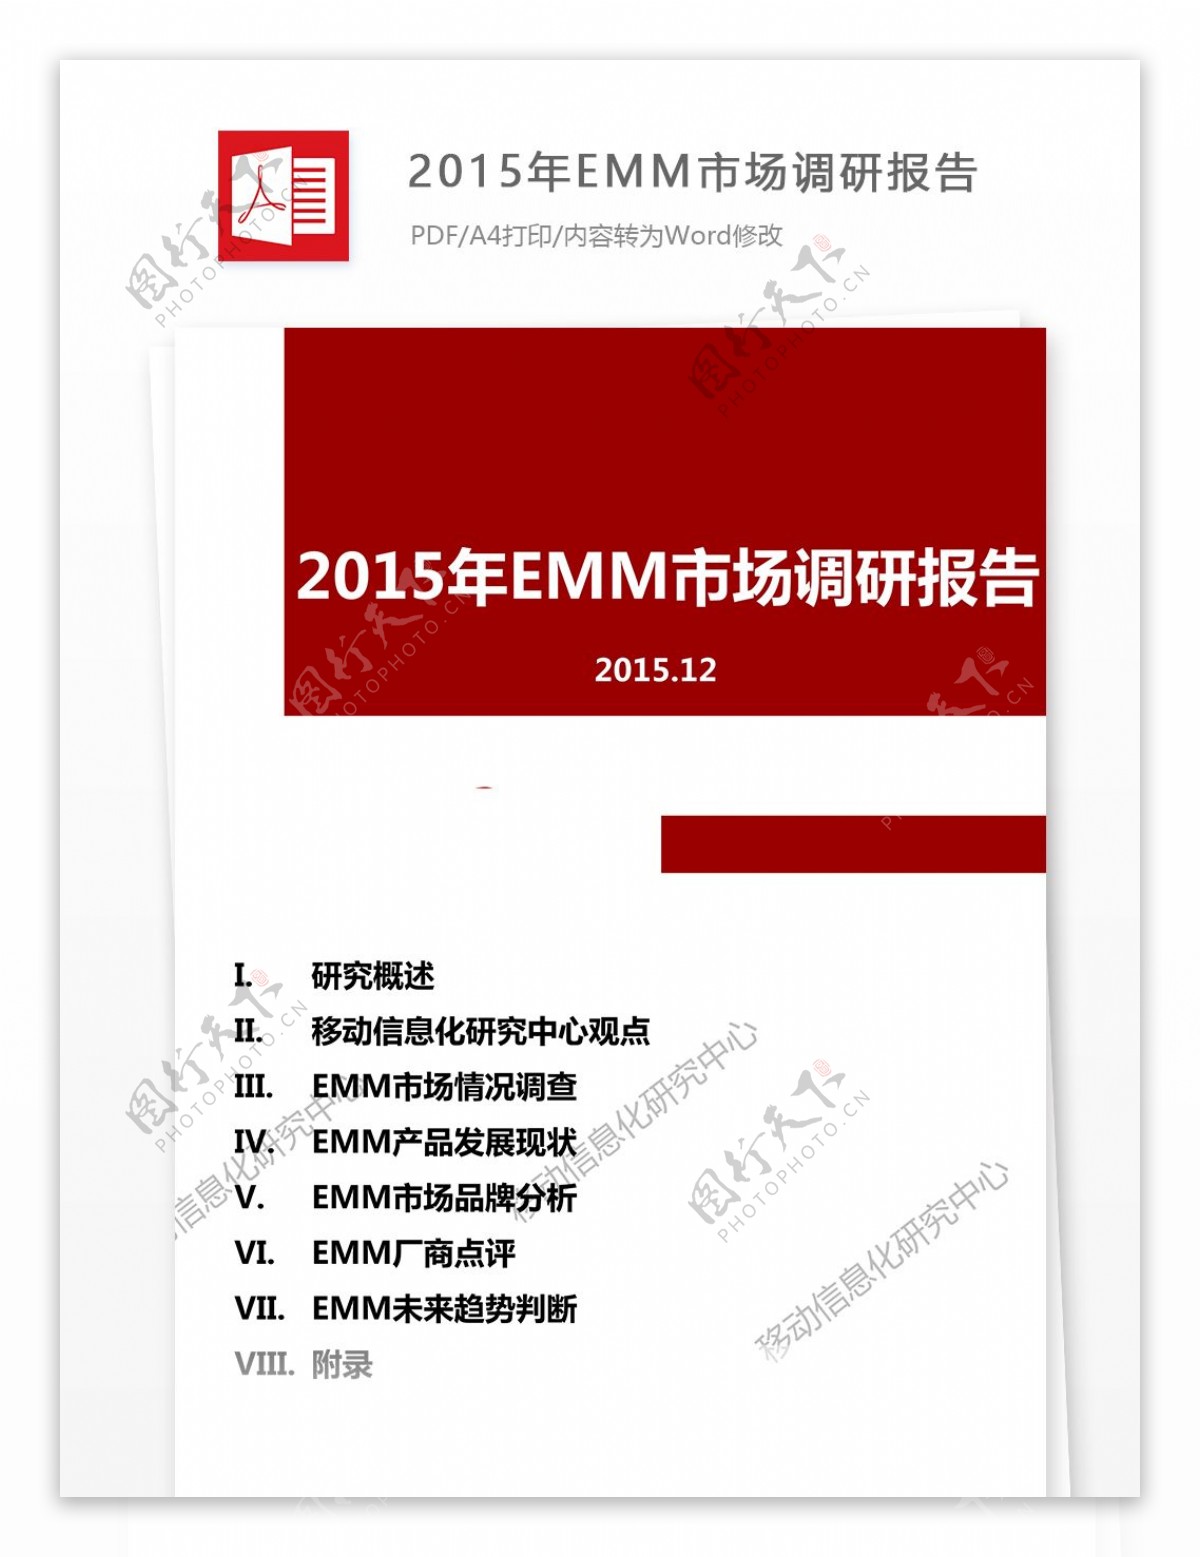 2015年EMM市场调研报告内容格式